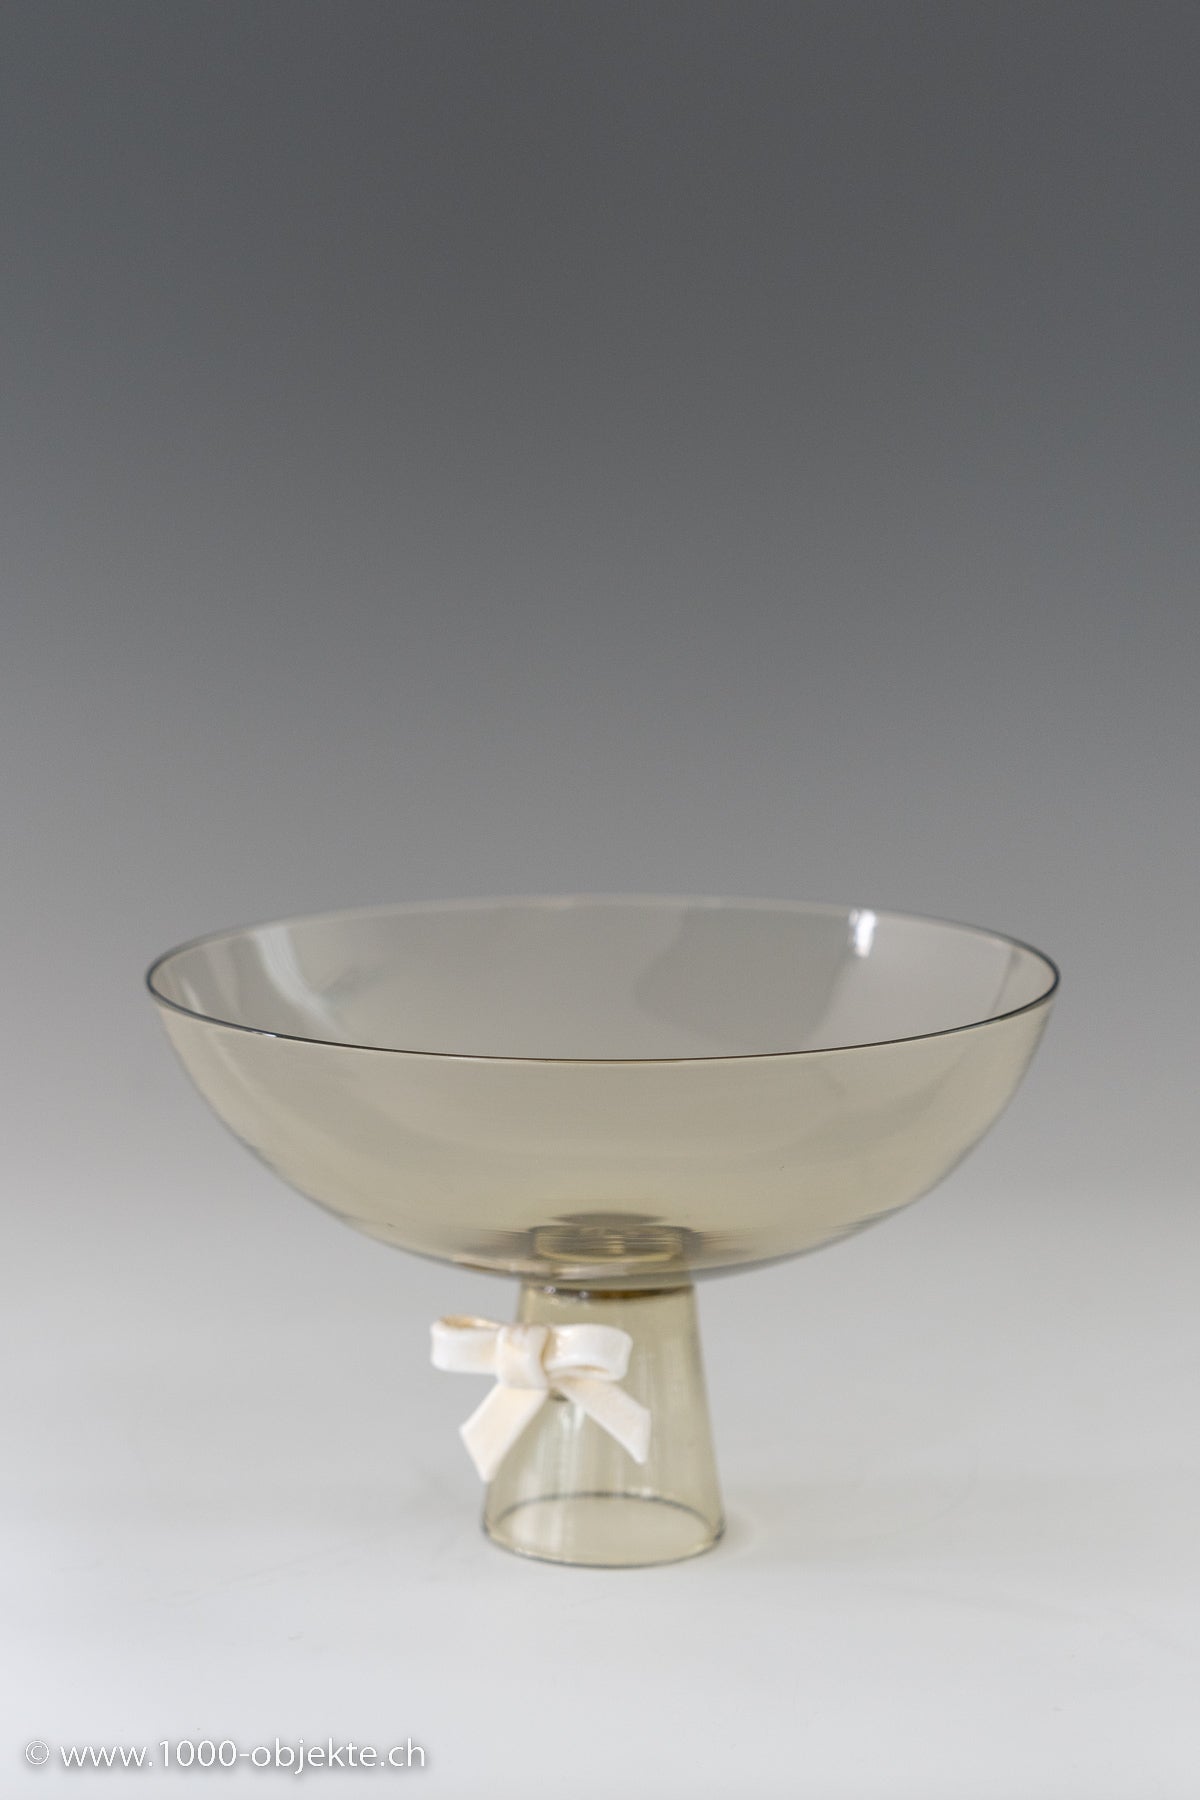 Tomaso Buzzi, glass bowl, ca. 1929